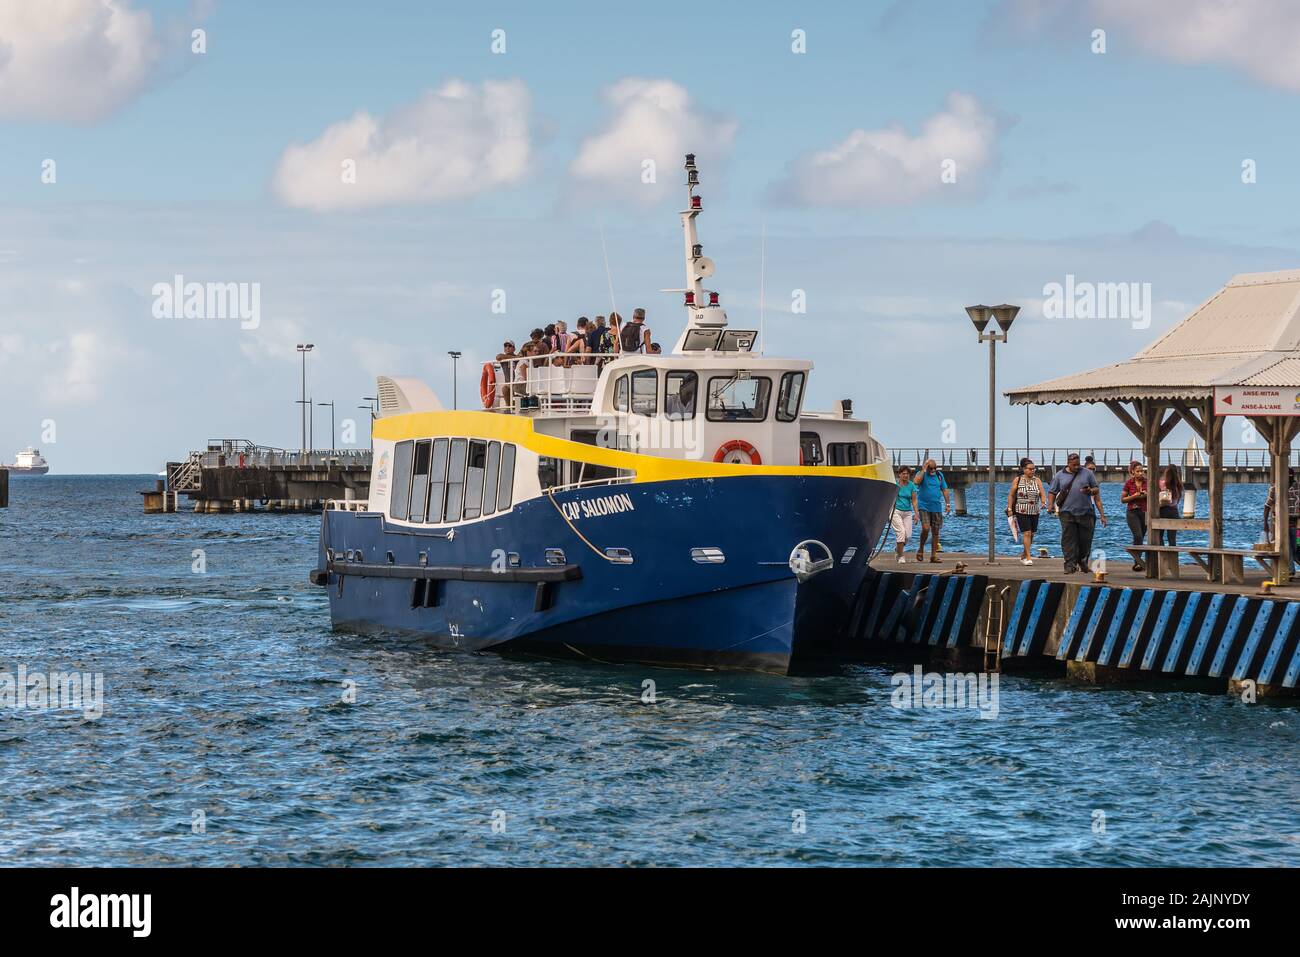 Fort-de-France, Martinica - Dicembre 13, 2018: nave passeggeri Cap Salomon con i turisti al molo del porto di Fort-de-France, Francia's Caribbean Foto Stock